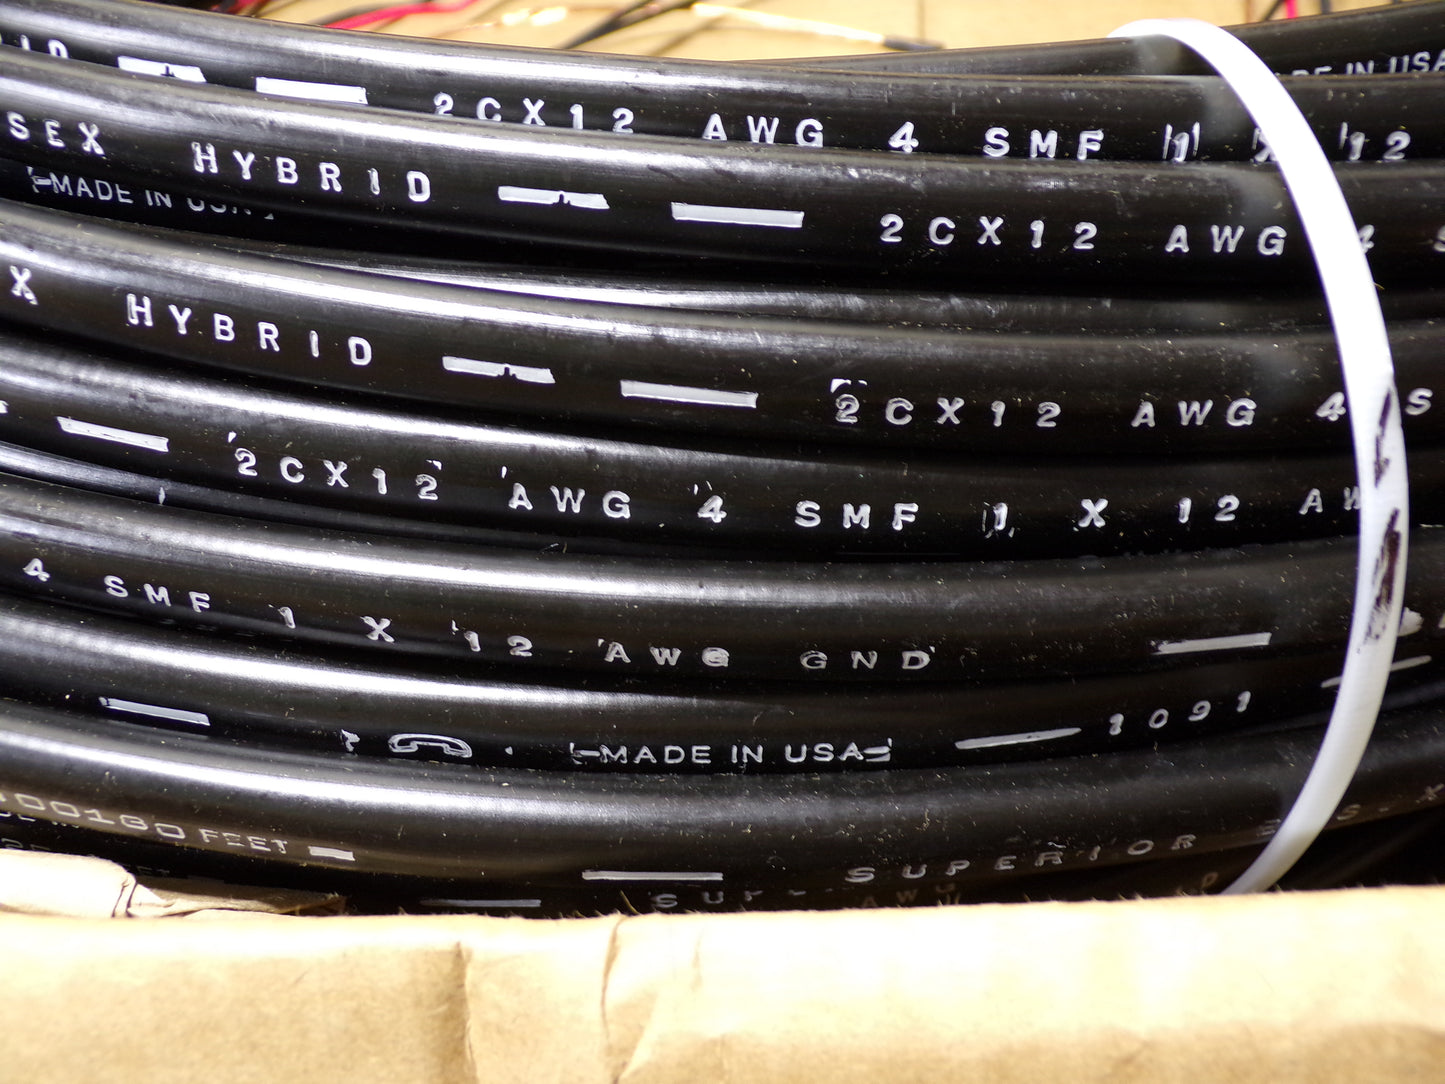 Superior Essex Hybrid Cable, 2 Fiber, 2-12AWG Copper, 1 Ground, 240 Feet Length (CR00713-WTA19)